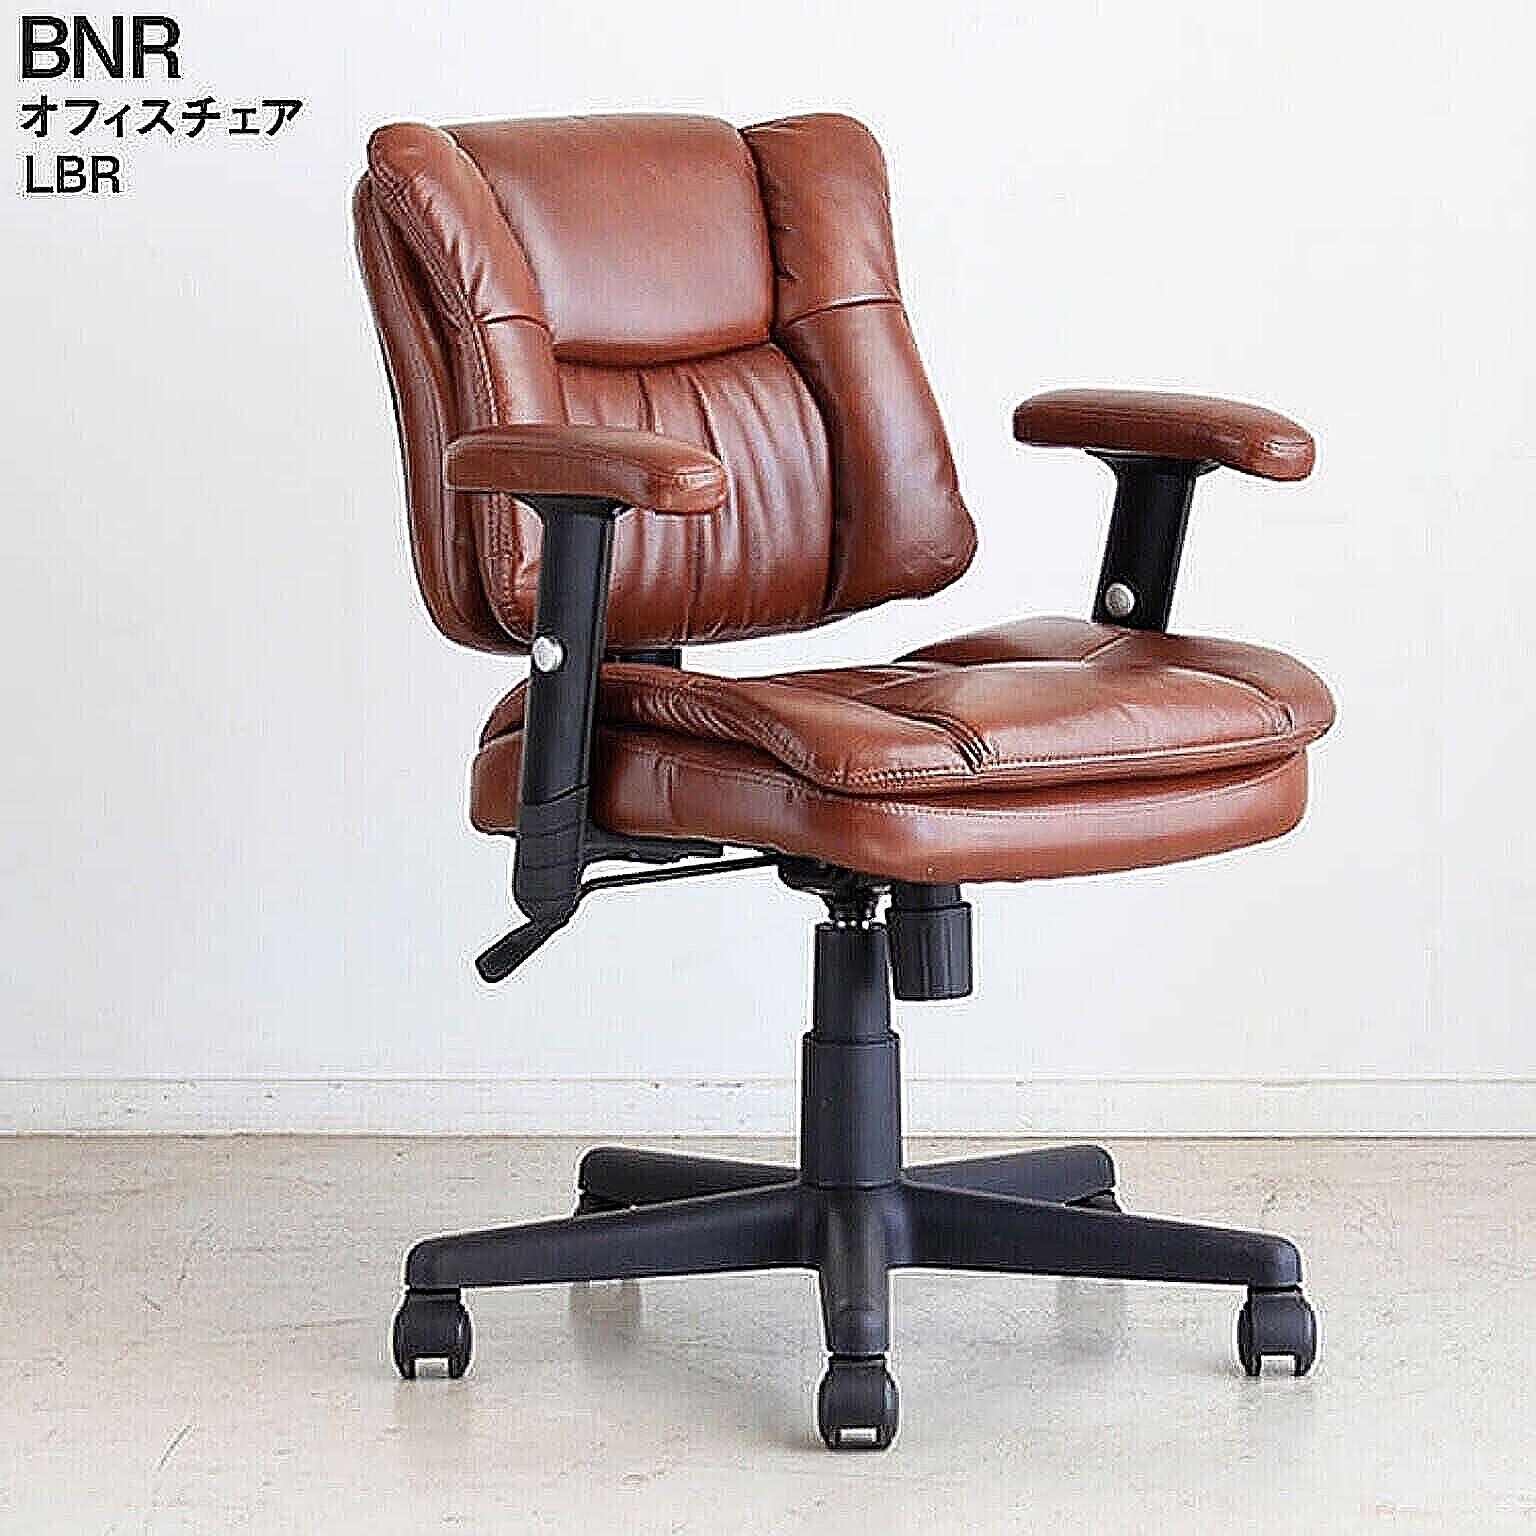 オフィスチェア BNR バナー LBR ライトブラウン 椅子 ルームチェア オフィスチェア デスクチェア シンプル モダン リモートワーク 